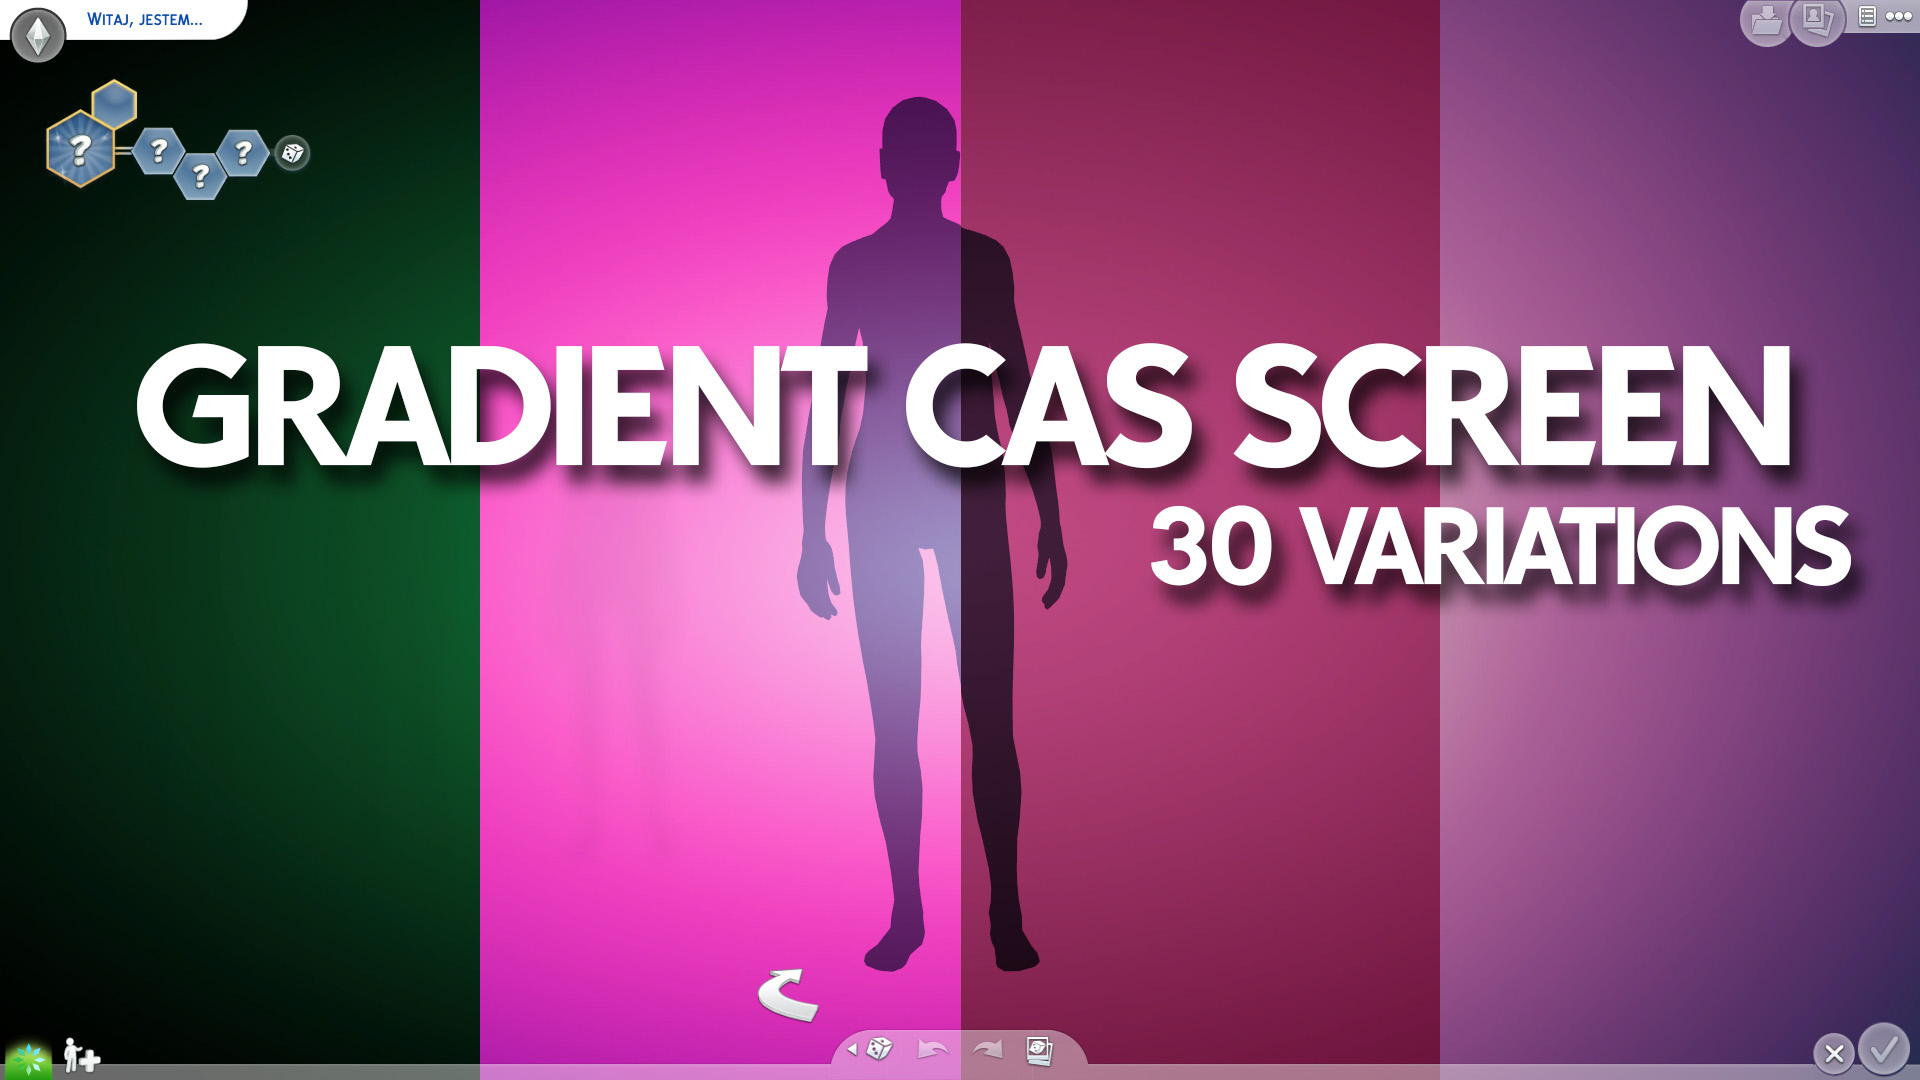 Gradient CAS Screen: Hãy khám phá hình ảnh mới với màn hình Gradient CAS đầy màu sắc! Hình nền với hiệu ứng gradient rất phổ biến và tạo nên vẻ đẹp đặc biệt, khiến cho các hình ảnh trông thật sự nổi bật. Hãy để màn hình Gradient CAS mang đến cho bạn một trải nghiệm đầy mới lạ!